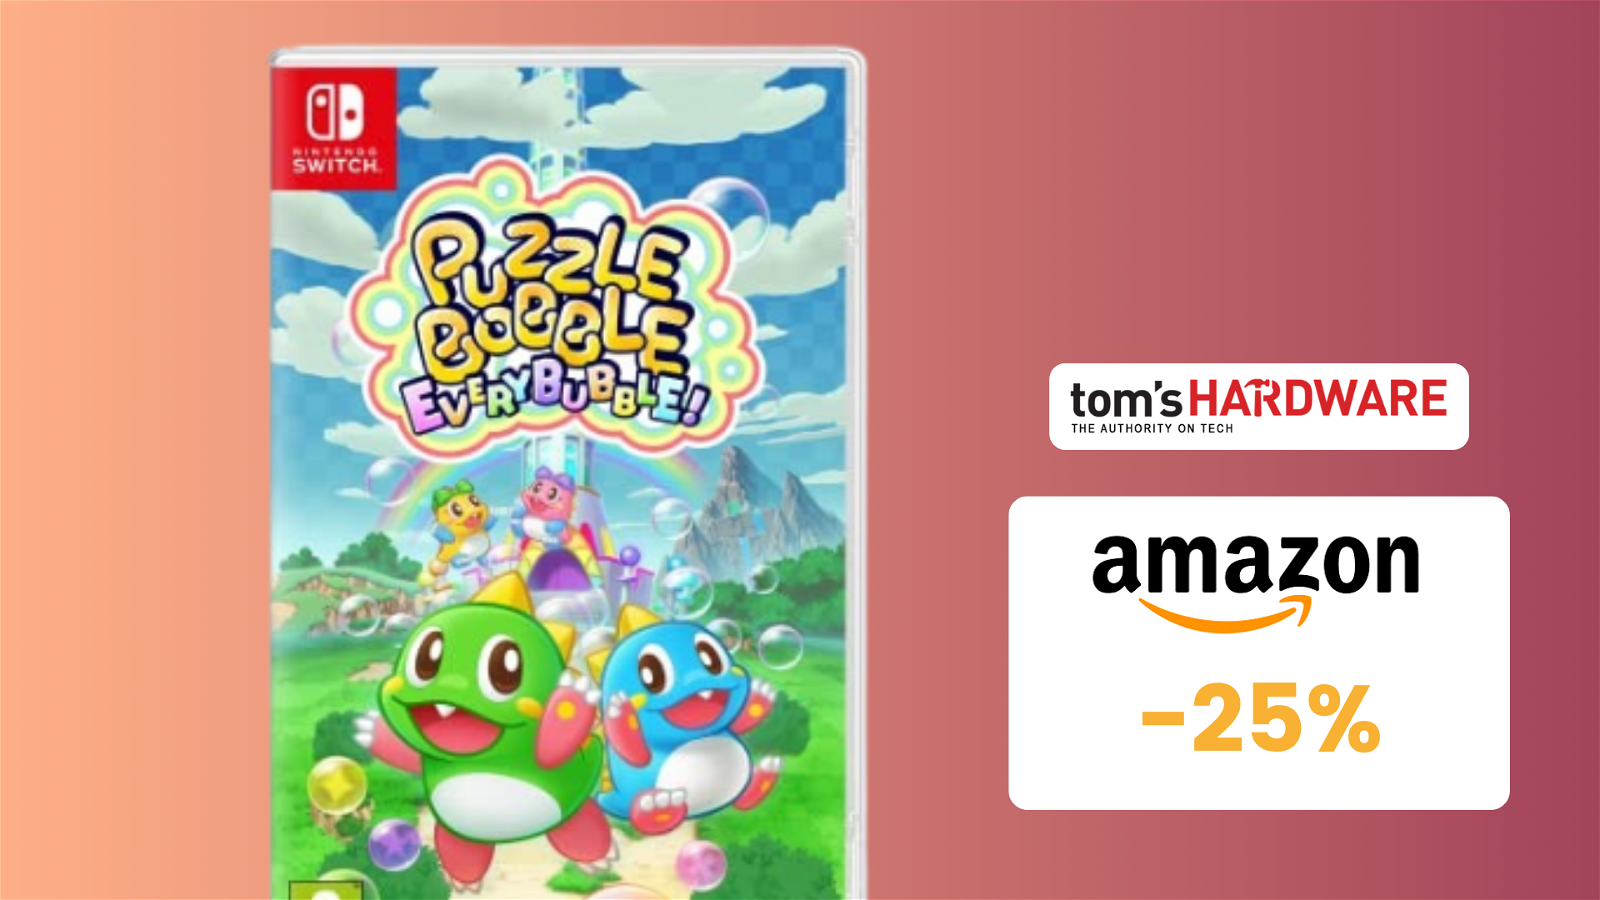 Immagine di Puzzle Bobble Everybubble!  CROLLA a 29,99€! Occasione IMPERDIBILE